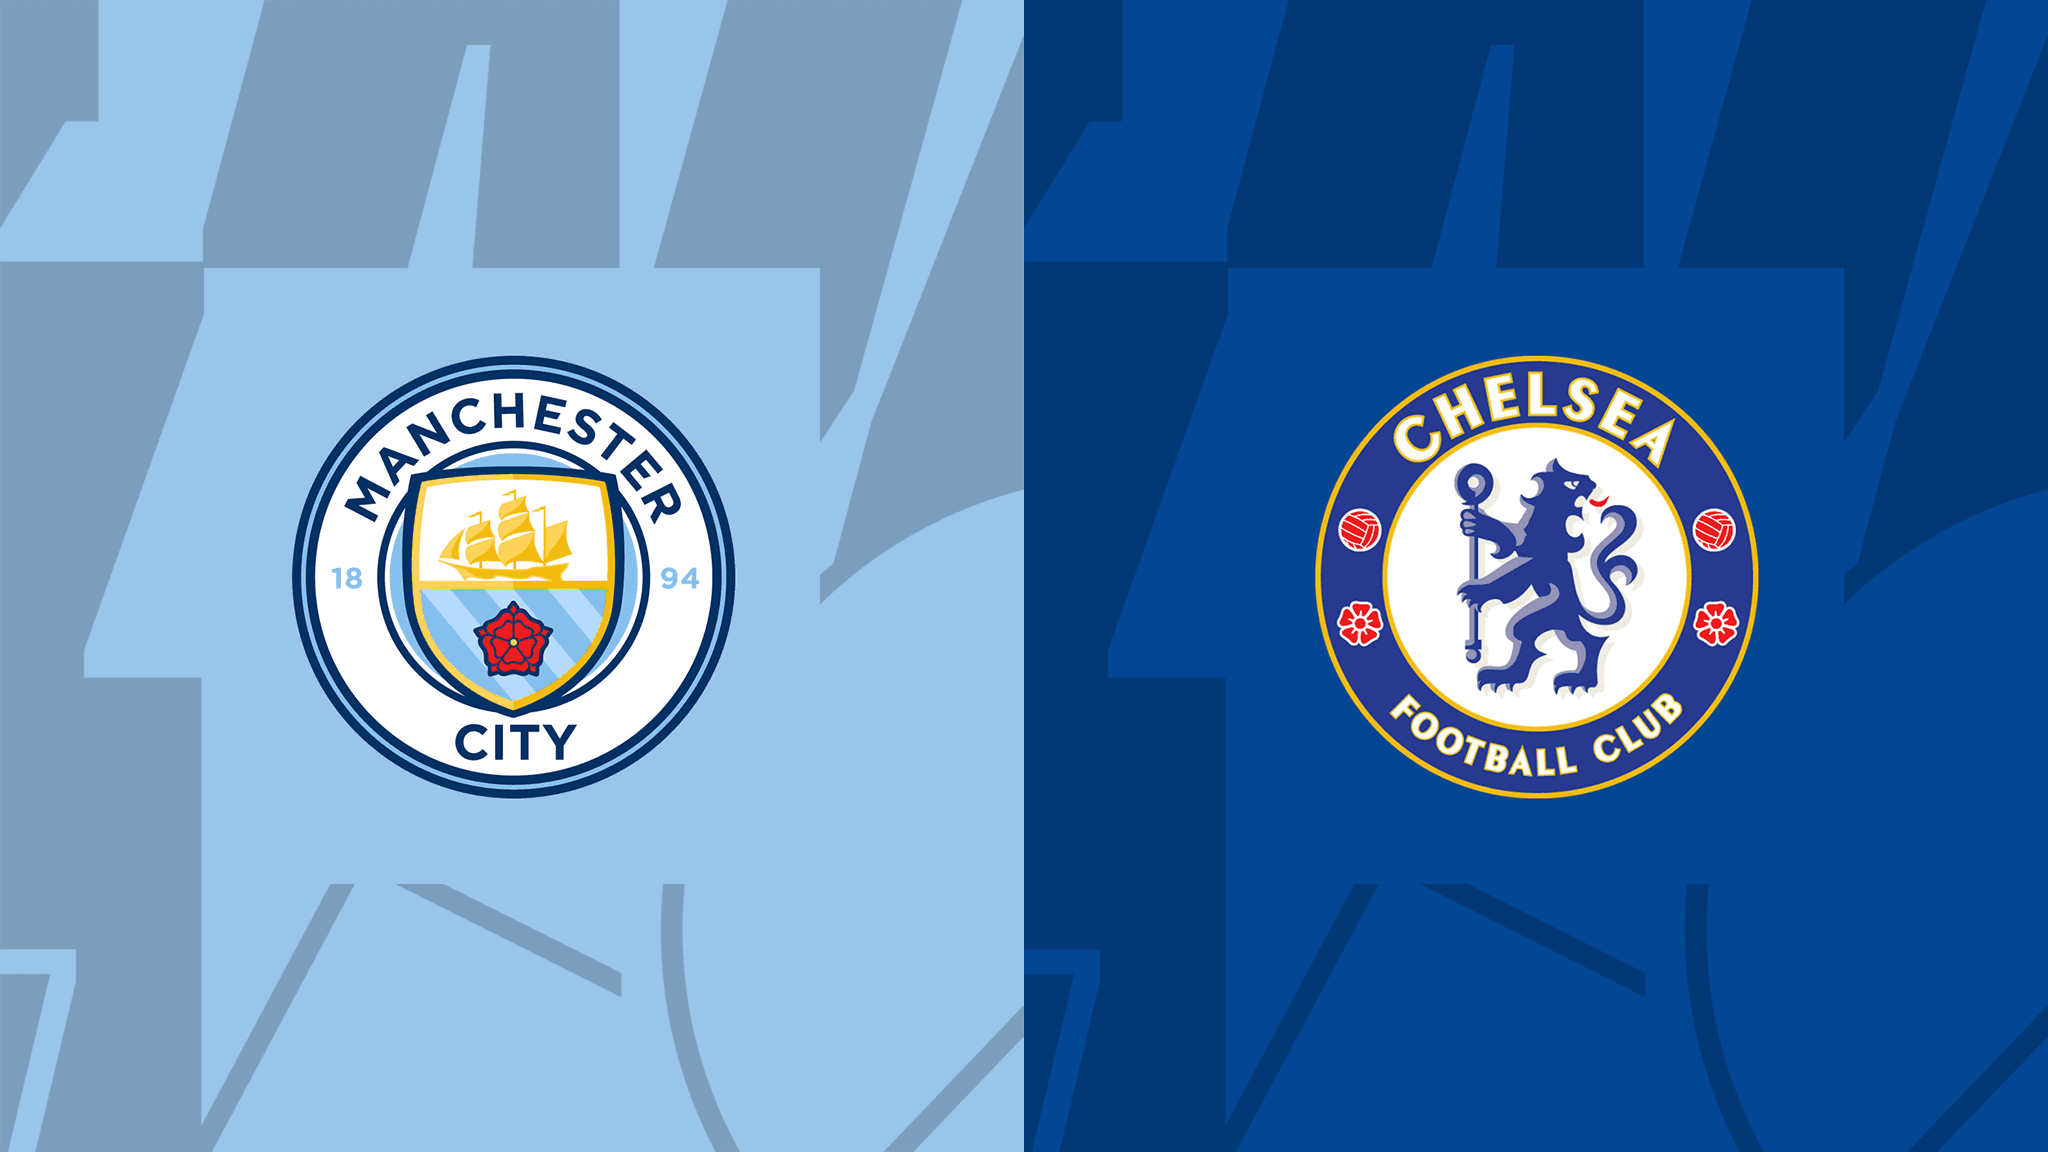  الدوري الإنجليزي : مباراة مانشستر سيتي وتشيلسي اليوم و القنوات الناقلة 2023-05-21 Manchester City vs Chelsea